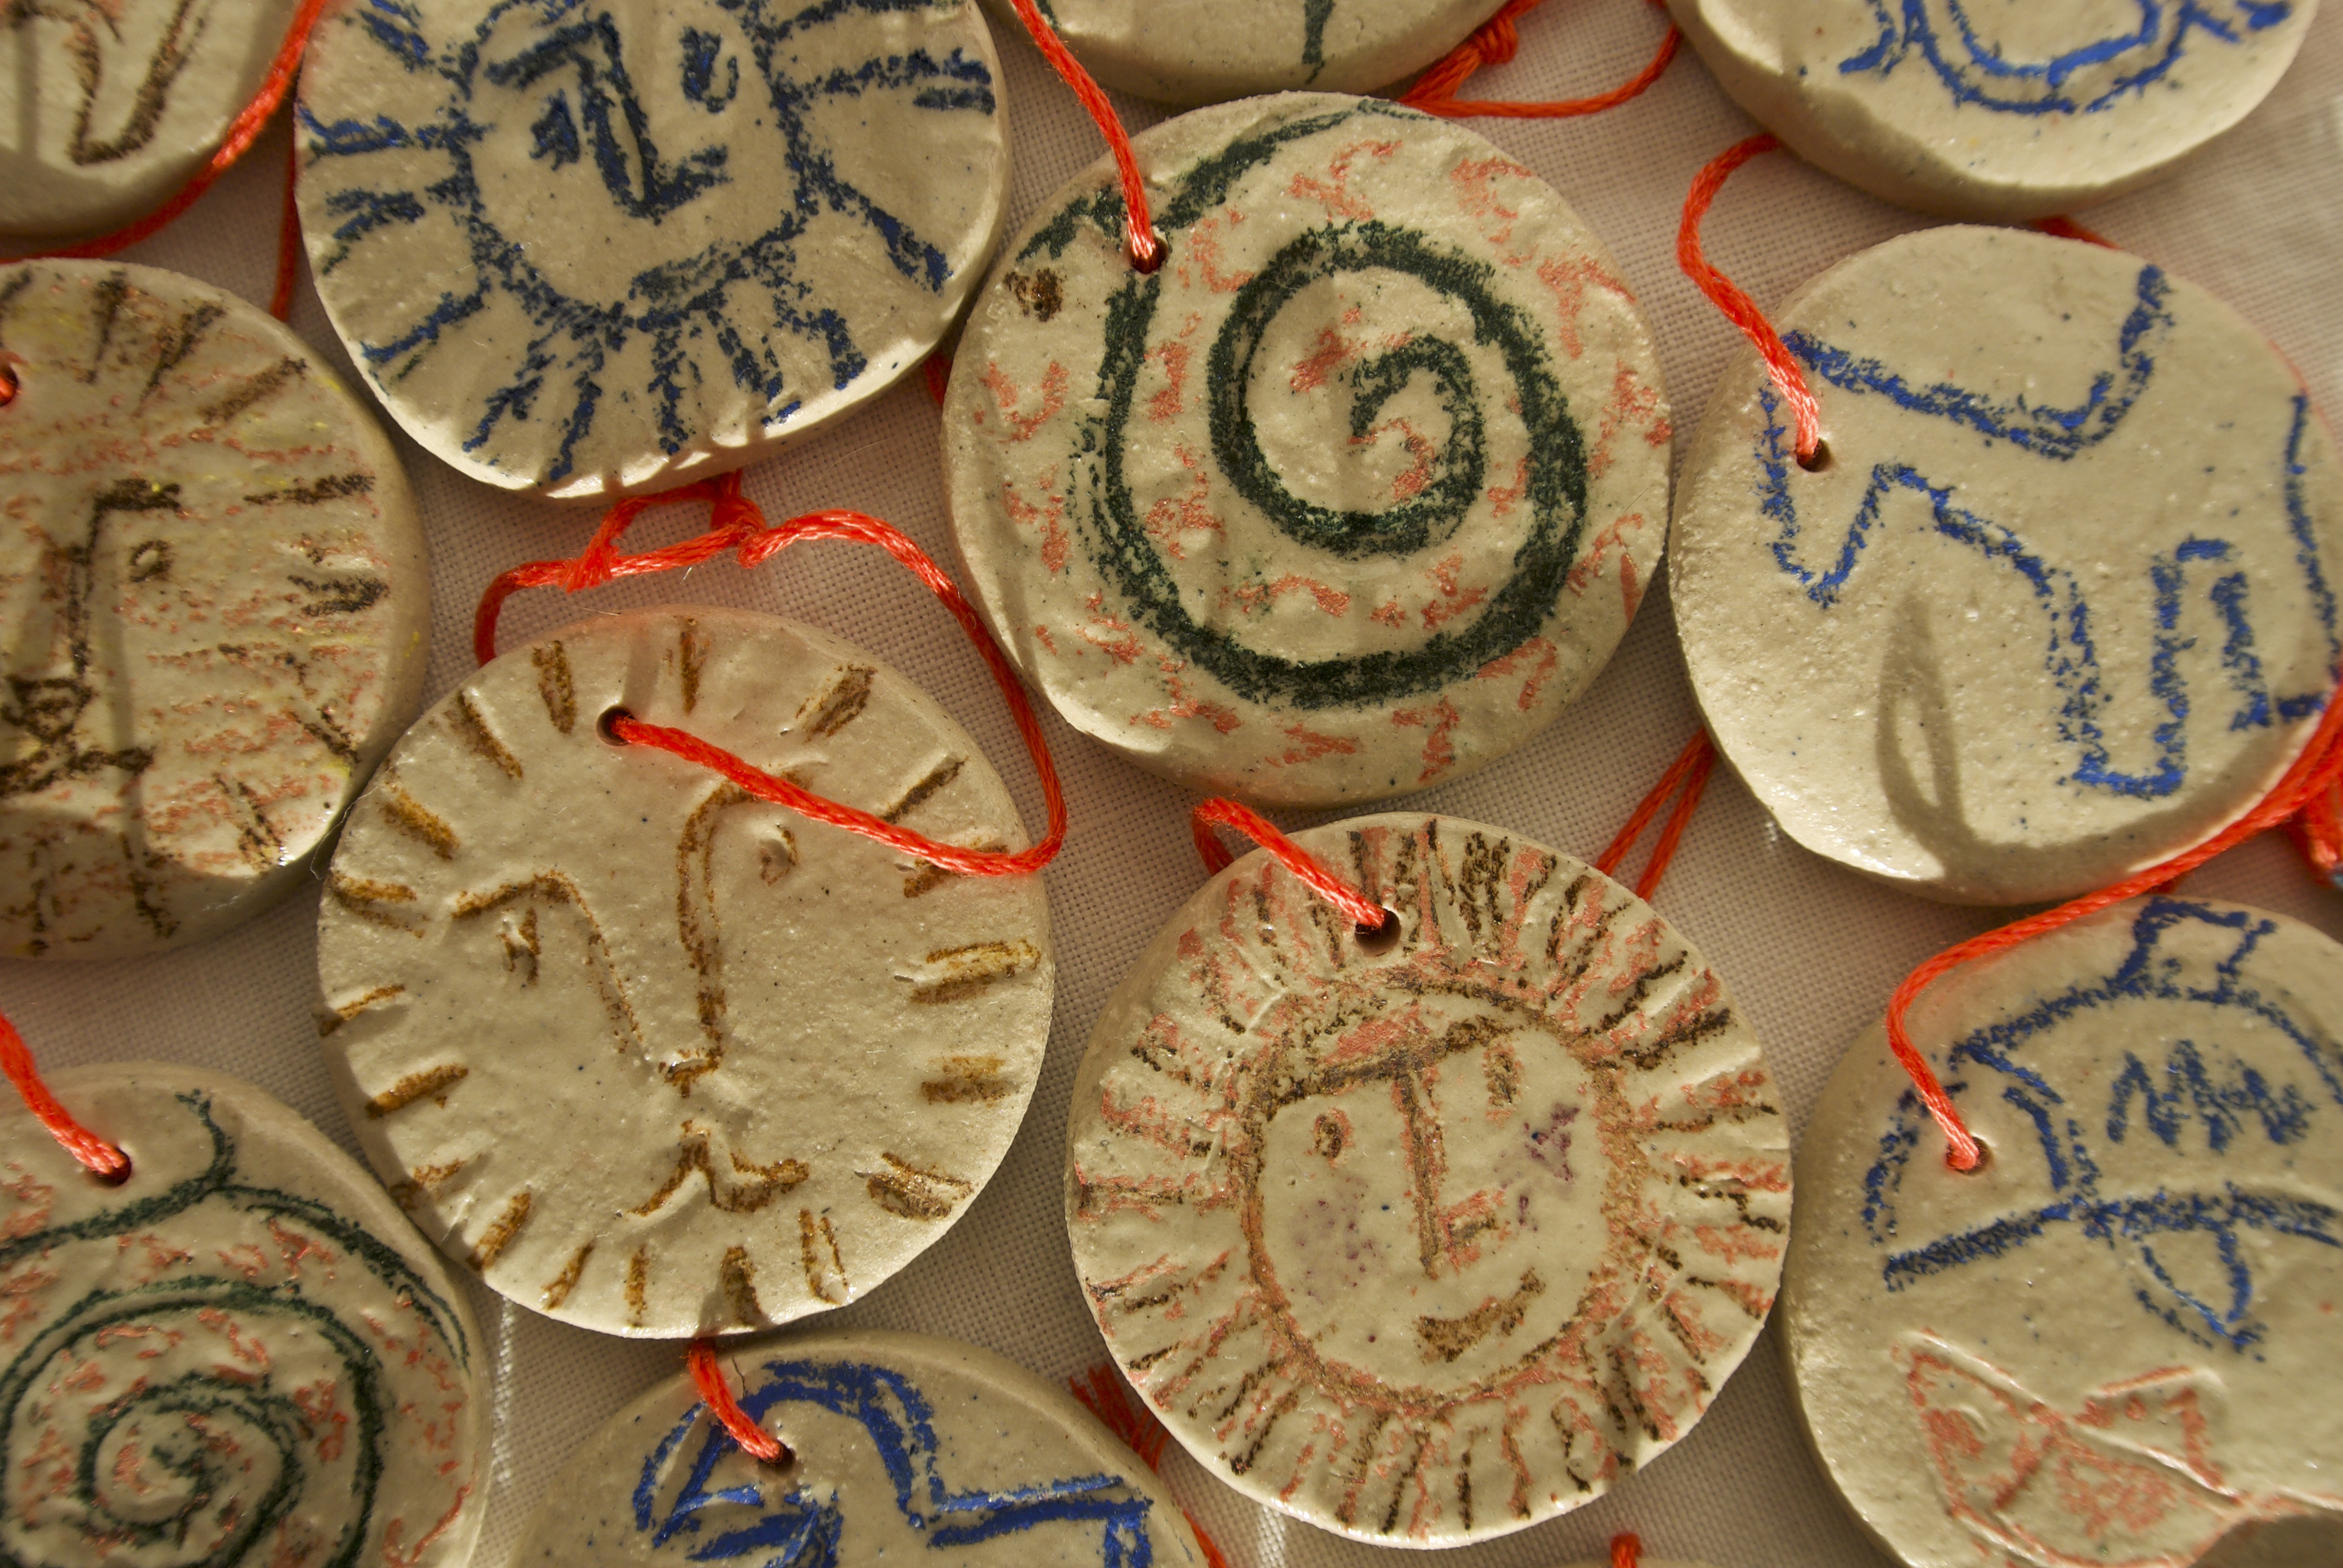 Ceramics Class: Alternative Ornaments